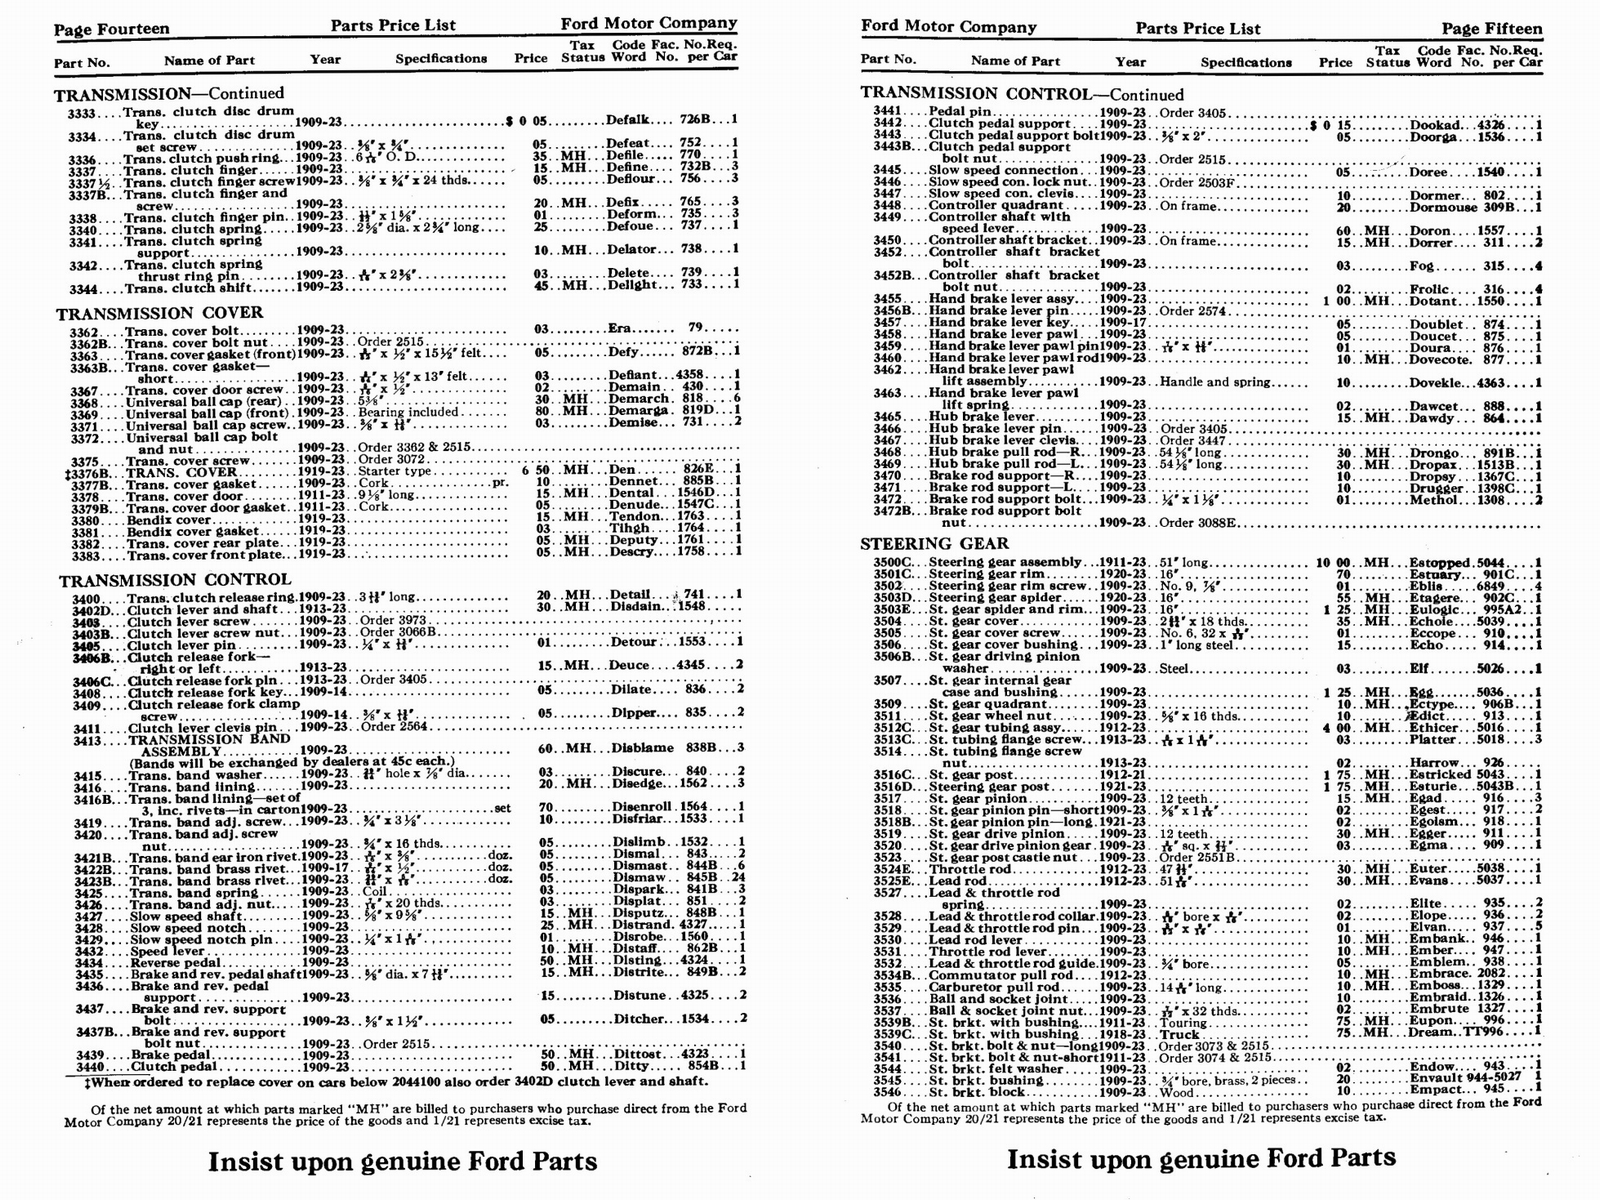 n_1923 Ford Price List-14-15.jpg